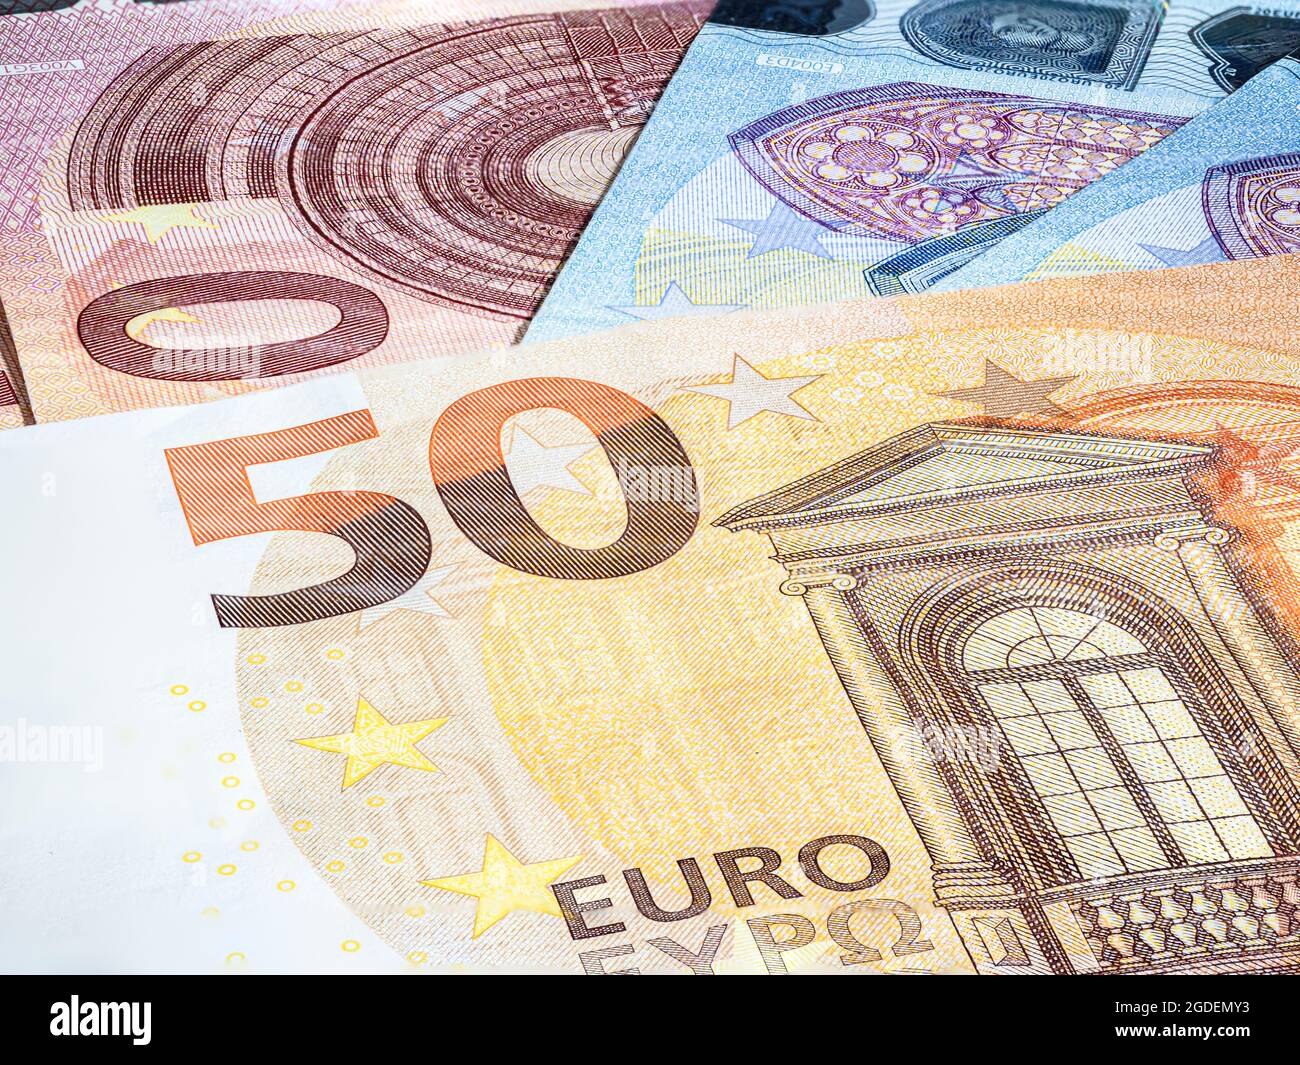 Gros plan sur un billet de 50 euros avec le drapeau européen. Euro, monnaie de l'Union européenne. Contexte financier. Capture de macro détaillée. Contexte de eur Banque D'Images